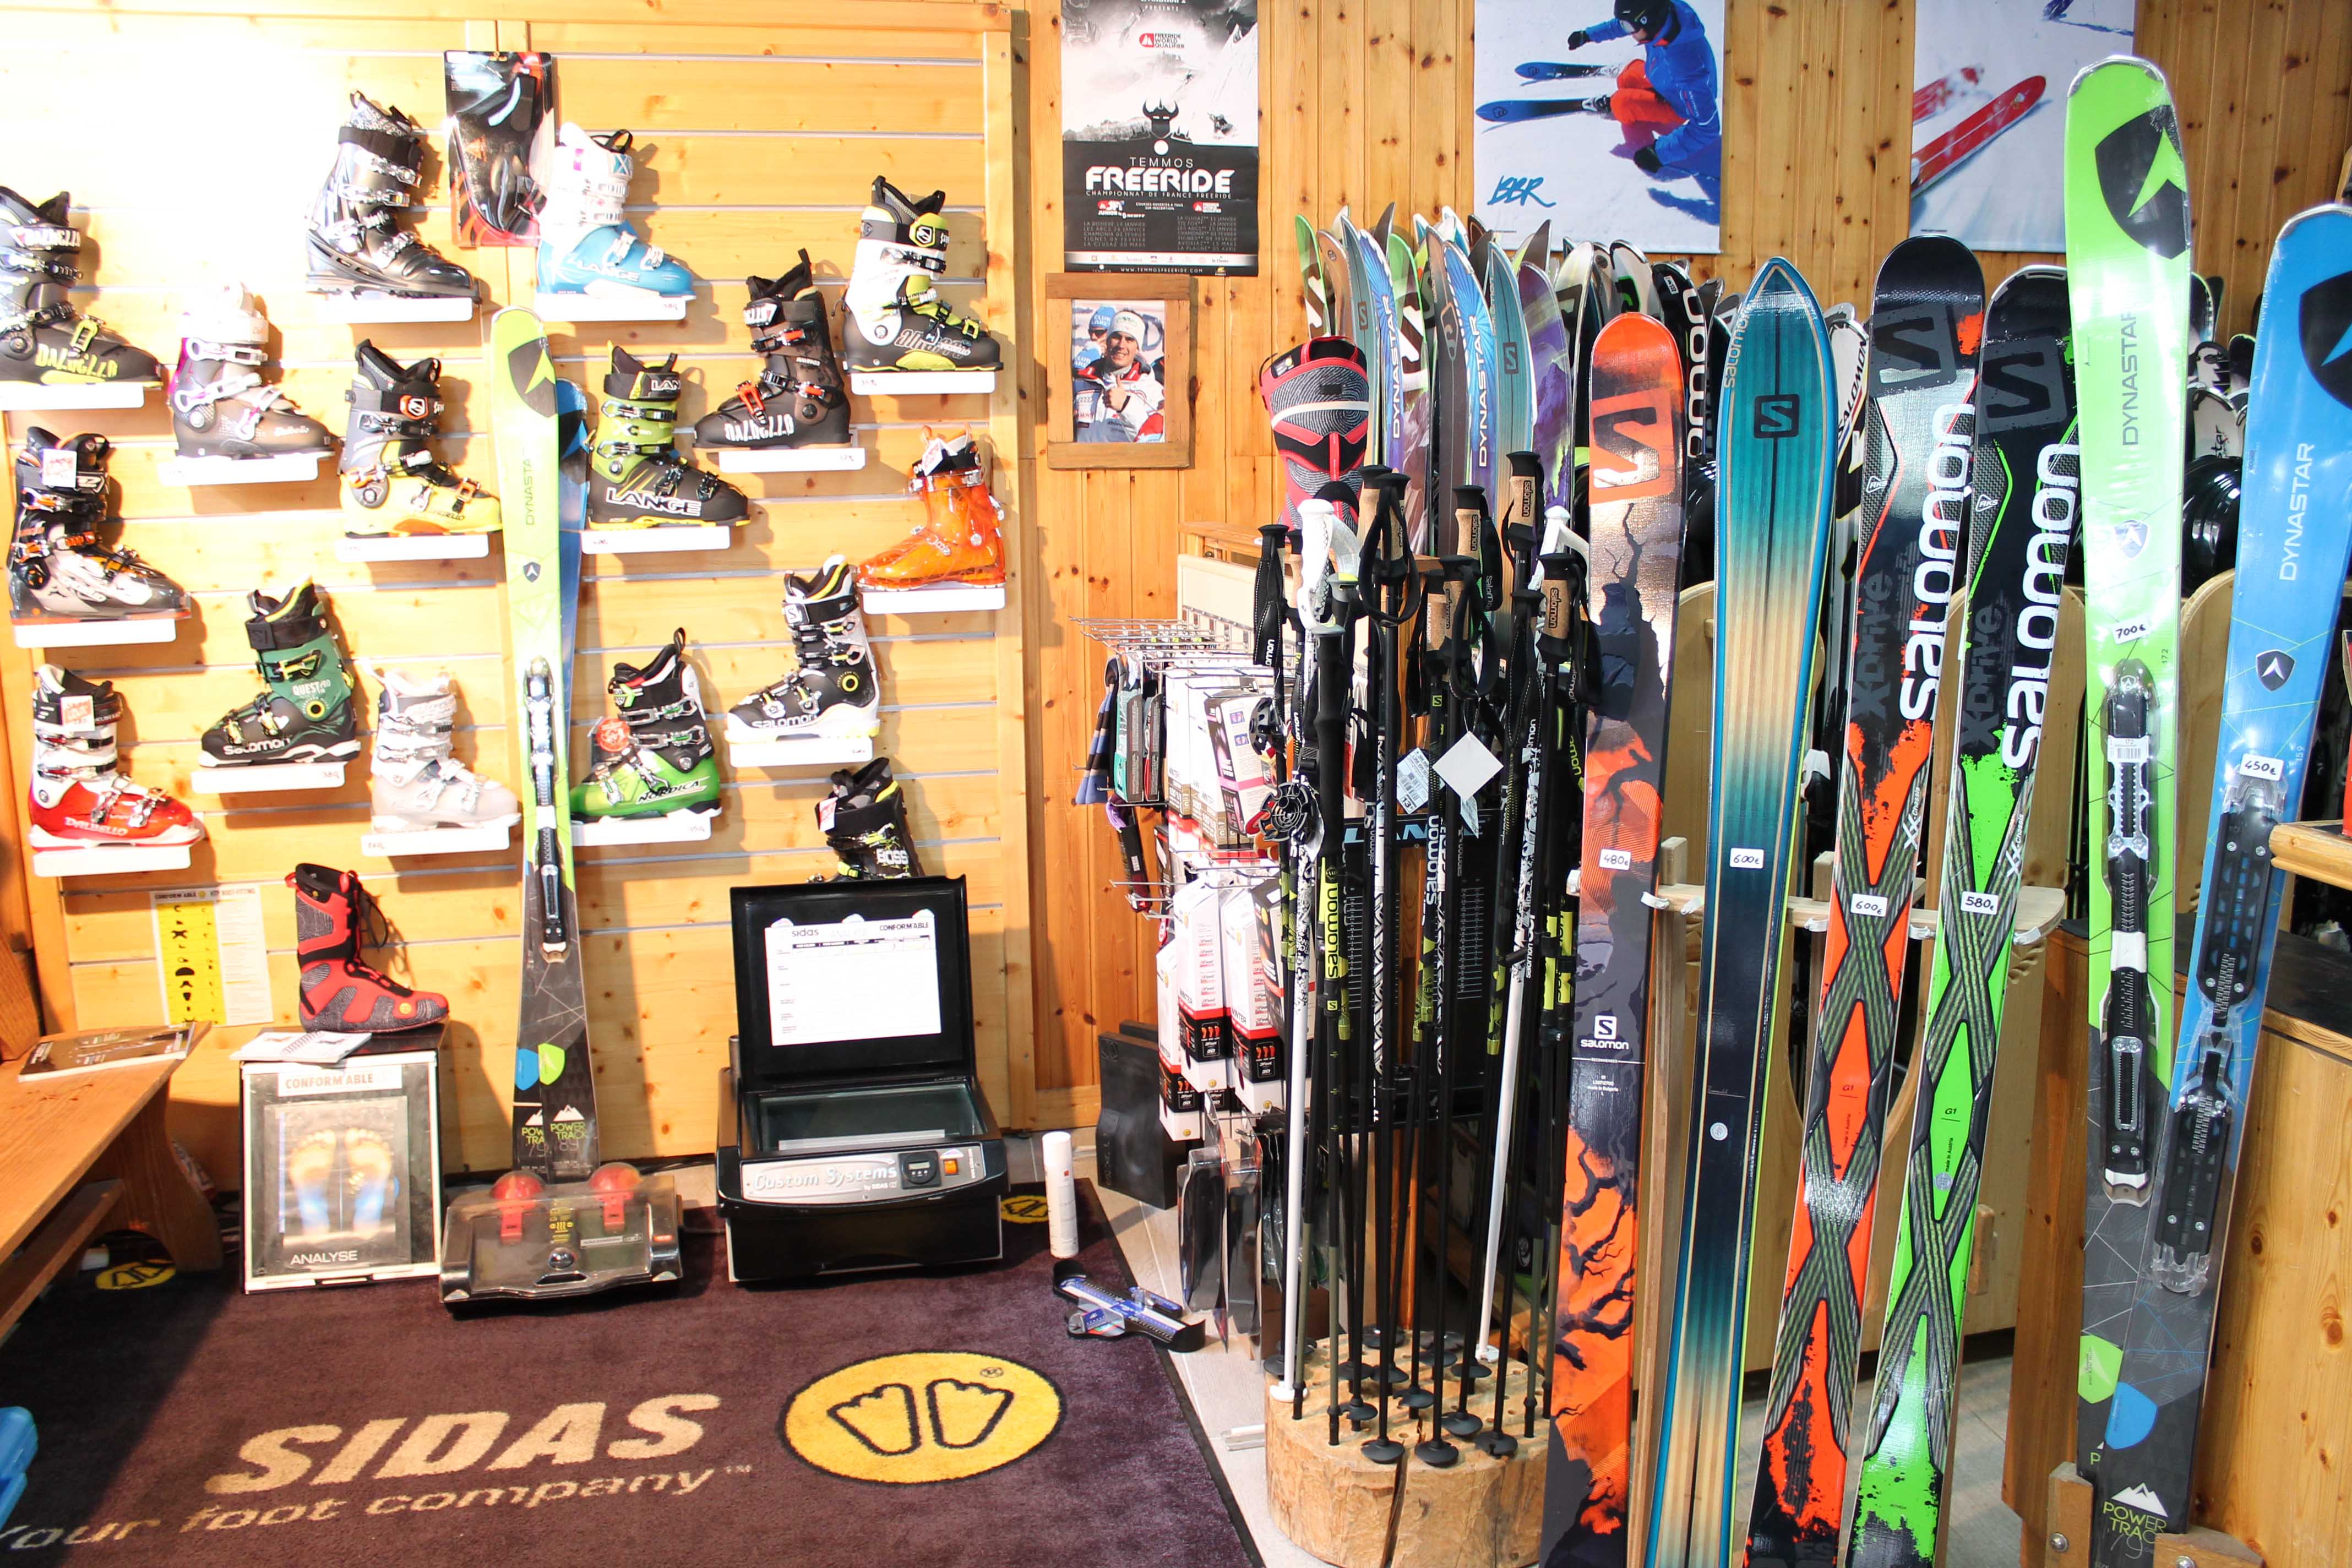 Trouver un magasin de ski avec de bons prix